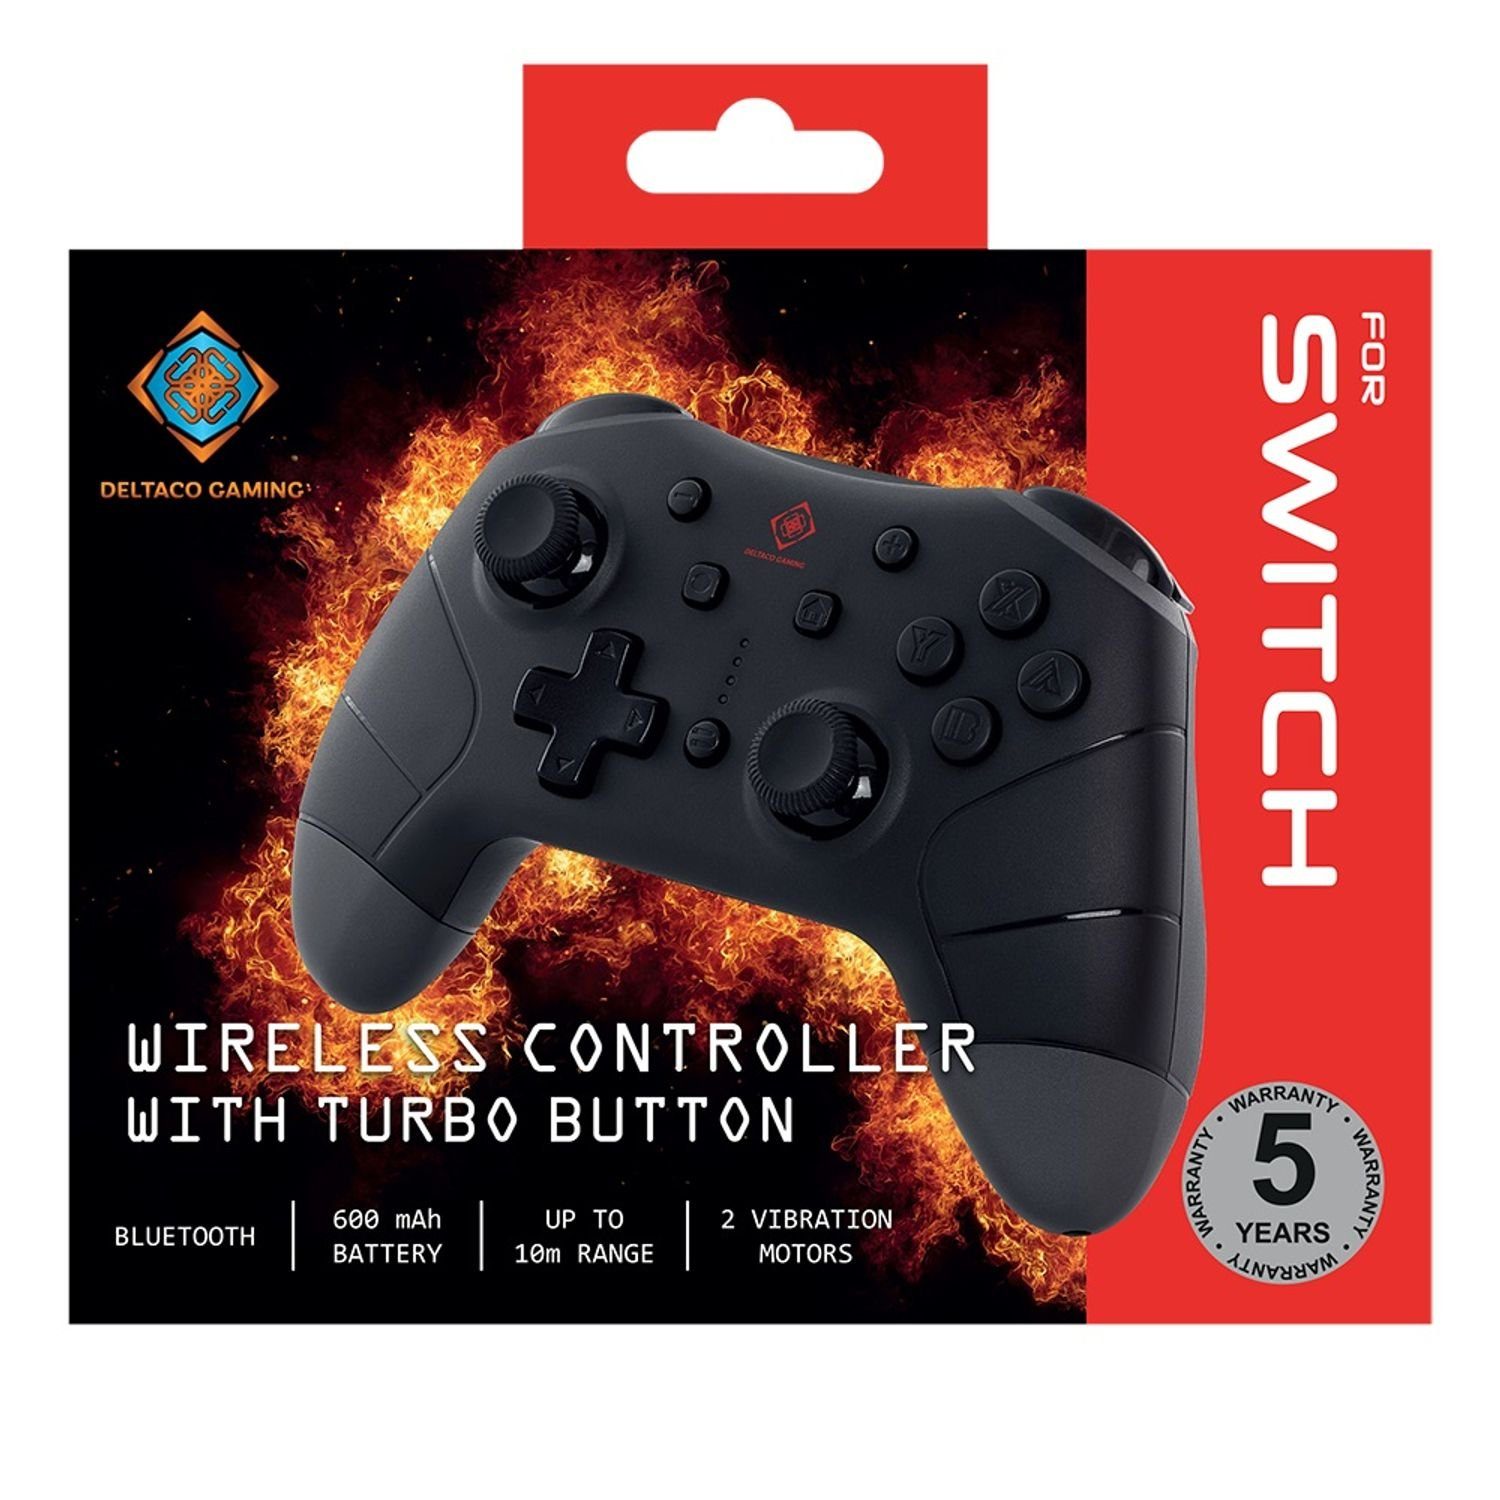 5 Switch GAMING Nintendo Herstellergarantie) ABS-Kunststoff Gamepad-Steuerung Controller schwarz Gaming-Controller (inkl. DELTACO Jahre